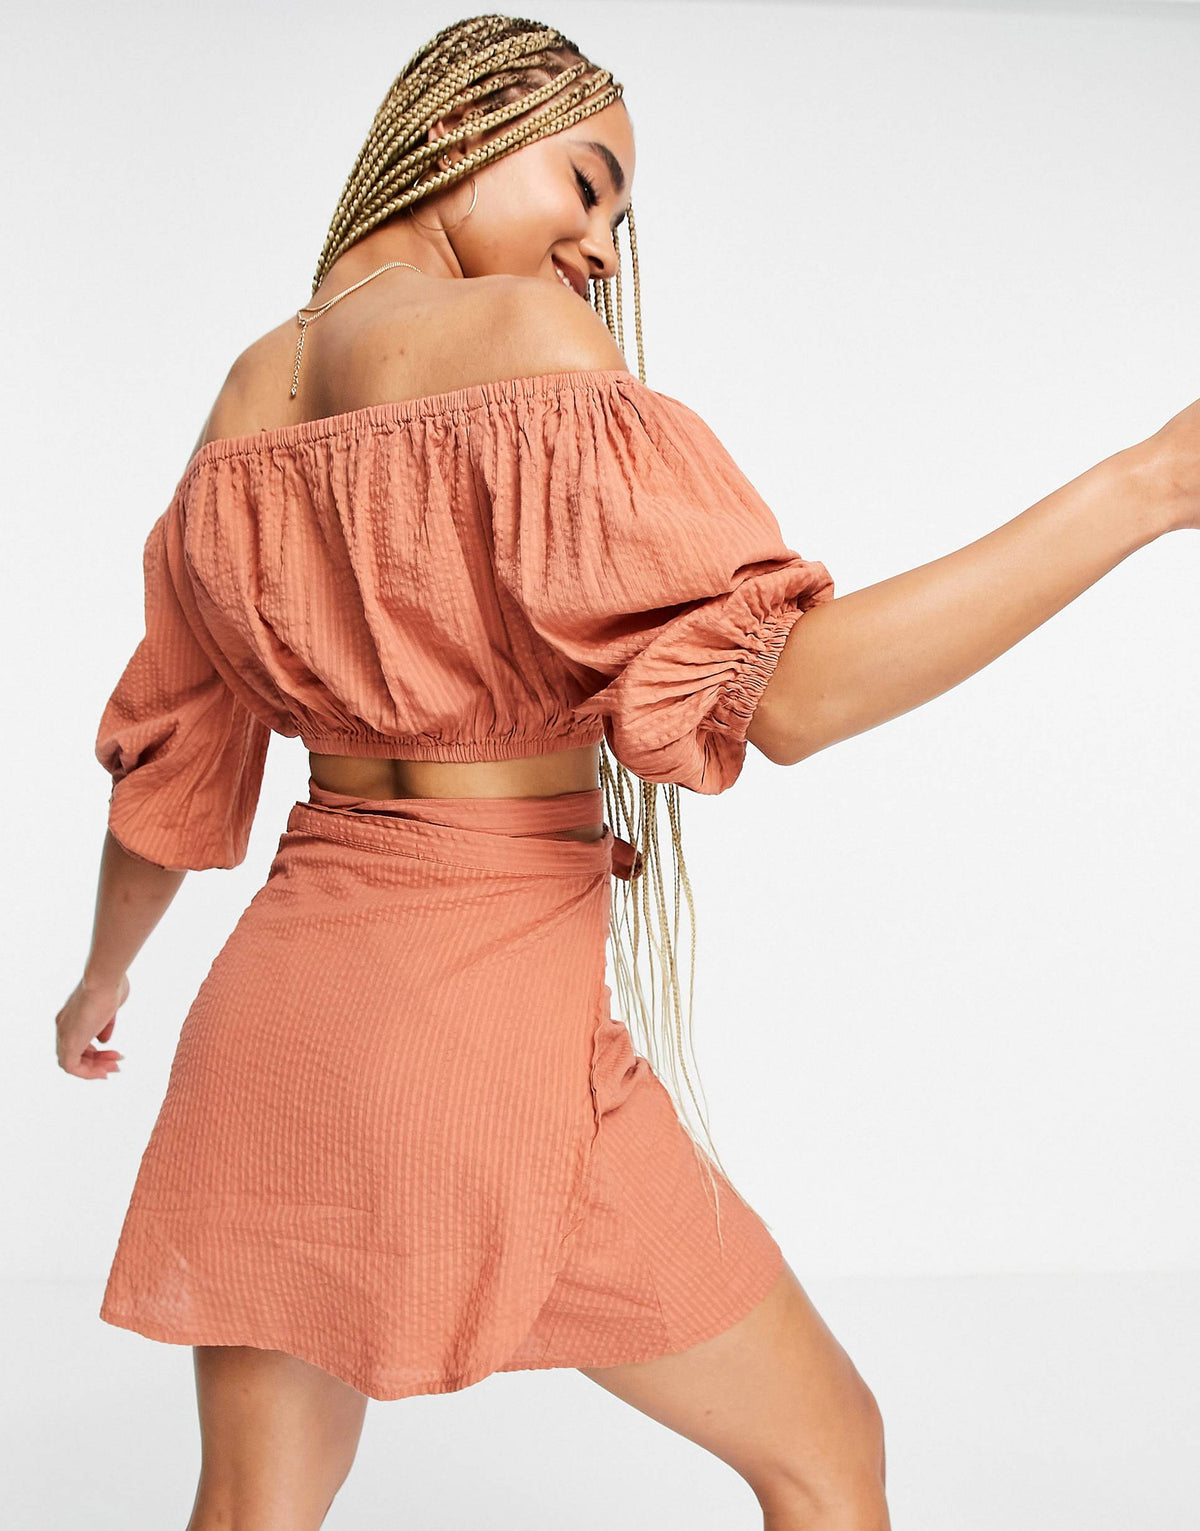 South Beach Orange Wrap Bardot Crop Top W. Wrap Skirt